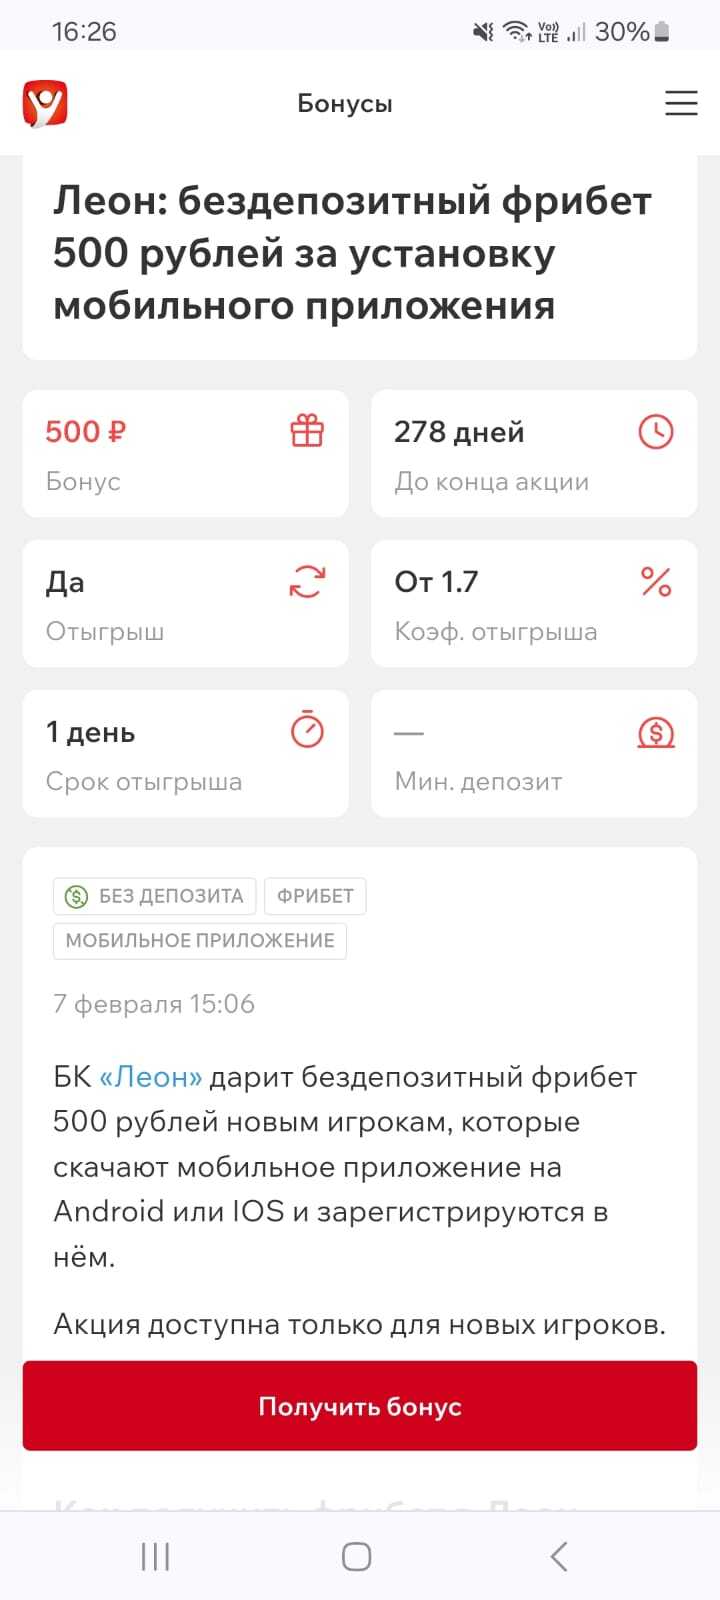 Бездепозитный фрибет 500 рублей в БК Leon за регистрацию в мобильном приложении